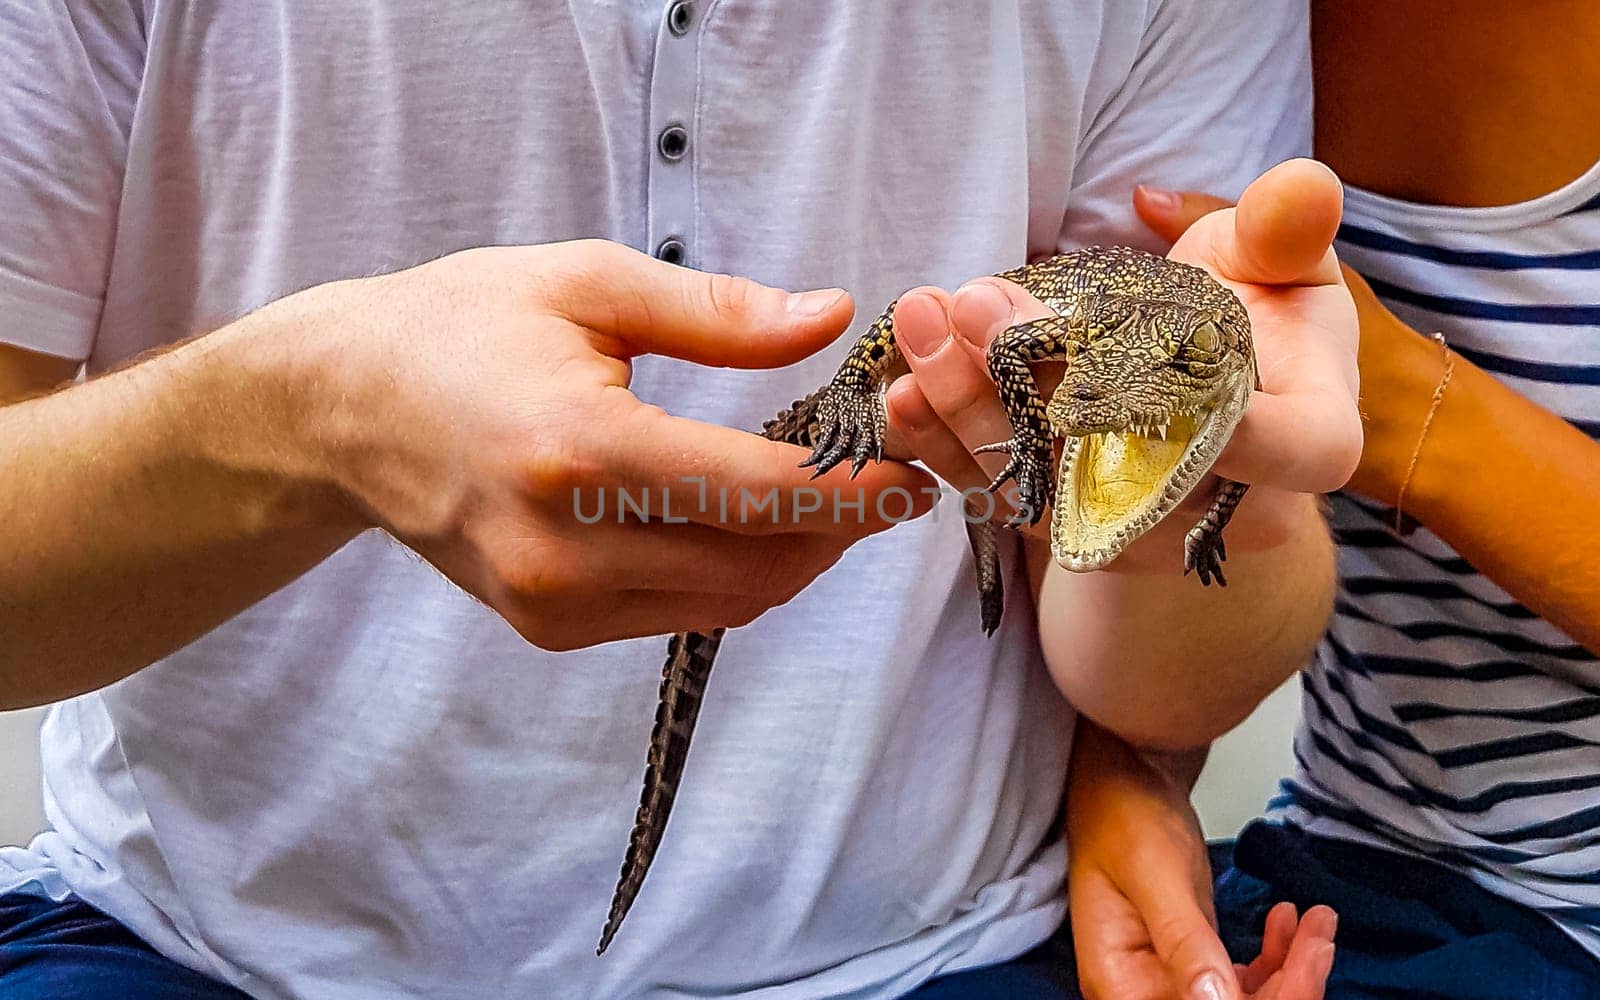 Baby crocodile from the mangroves in hand in Sri Lanka. by Arkadij